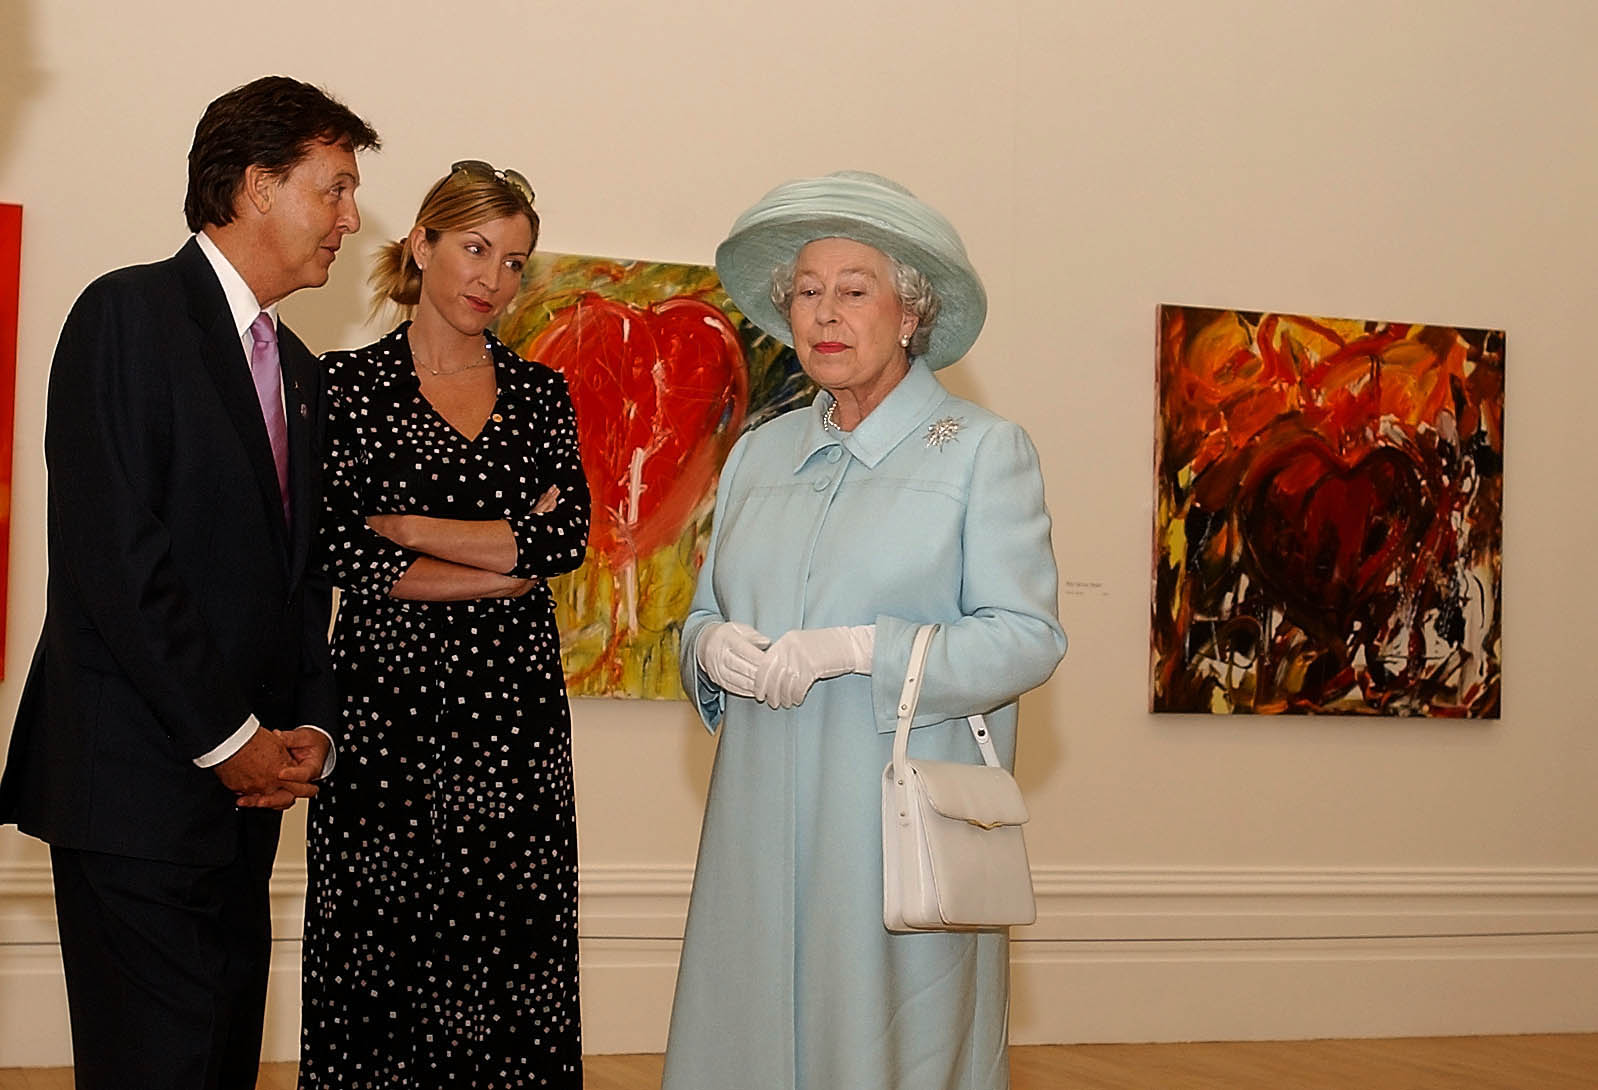 Paul McCartney et Heather Mills s'entretiennent avec la reine Elizabeth II à la Walker Art Gallery le 25 juillet 2002 à Liverpoool, Angleterre | Source : Getty Images